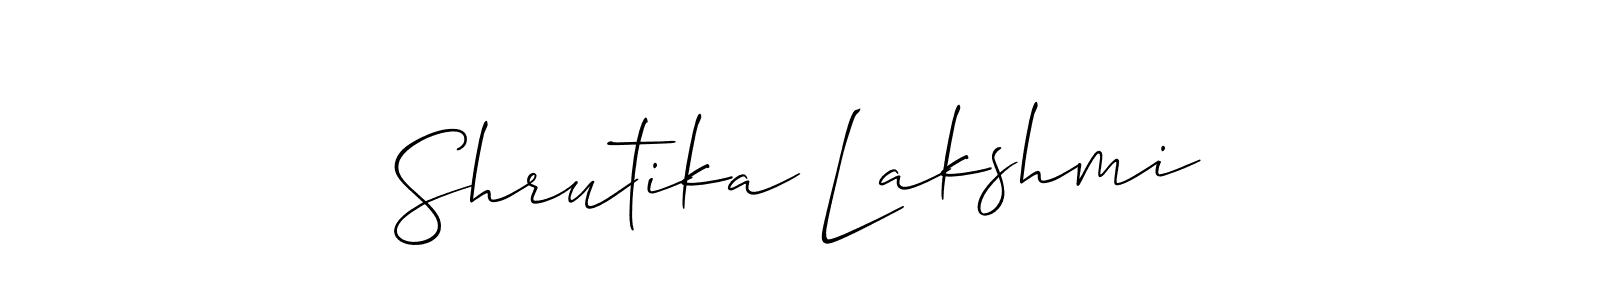 How to make Shrutika Lakshmi signature? Allison_Script is a professional autograph style. Create handwritten signature for Shrutika Lakshmi name. Shrutika Lakshmi signature style 2 images and pictures png